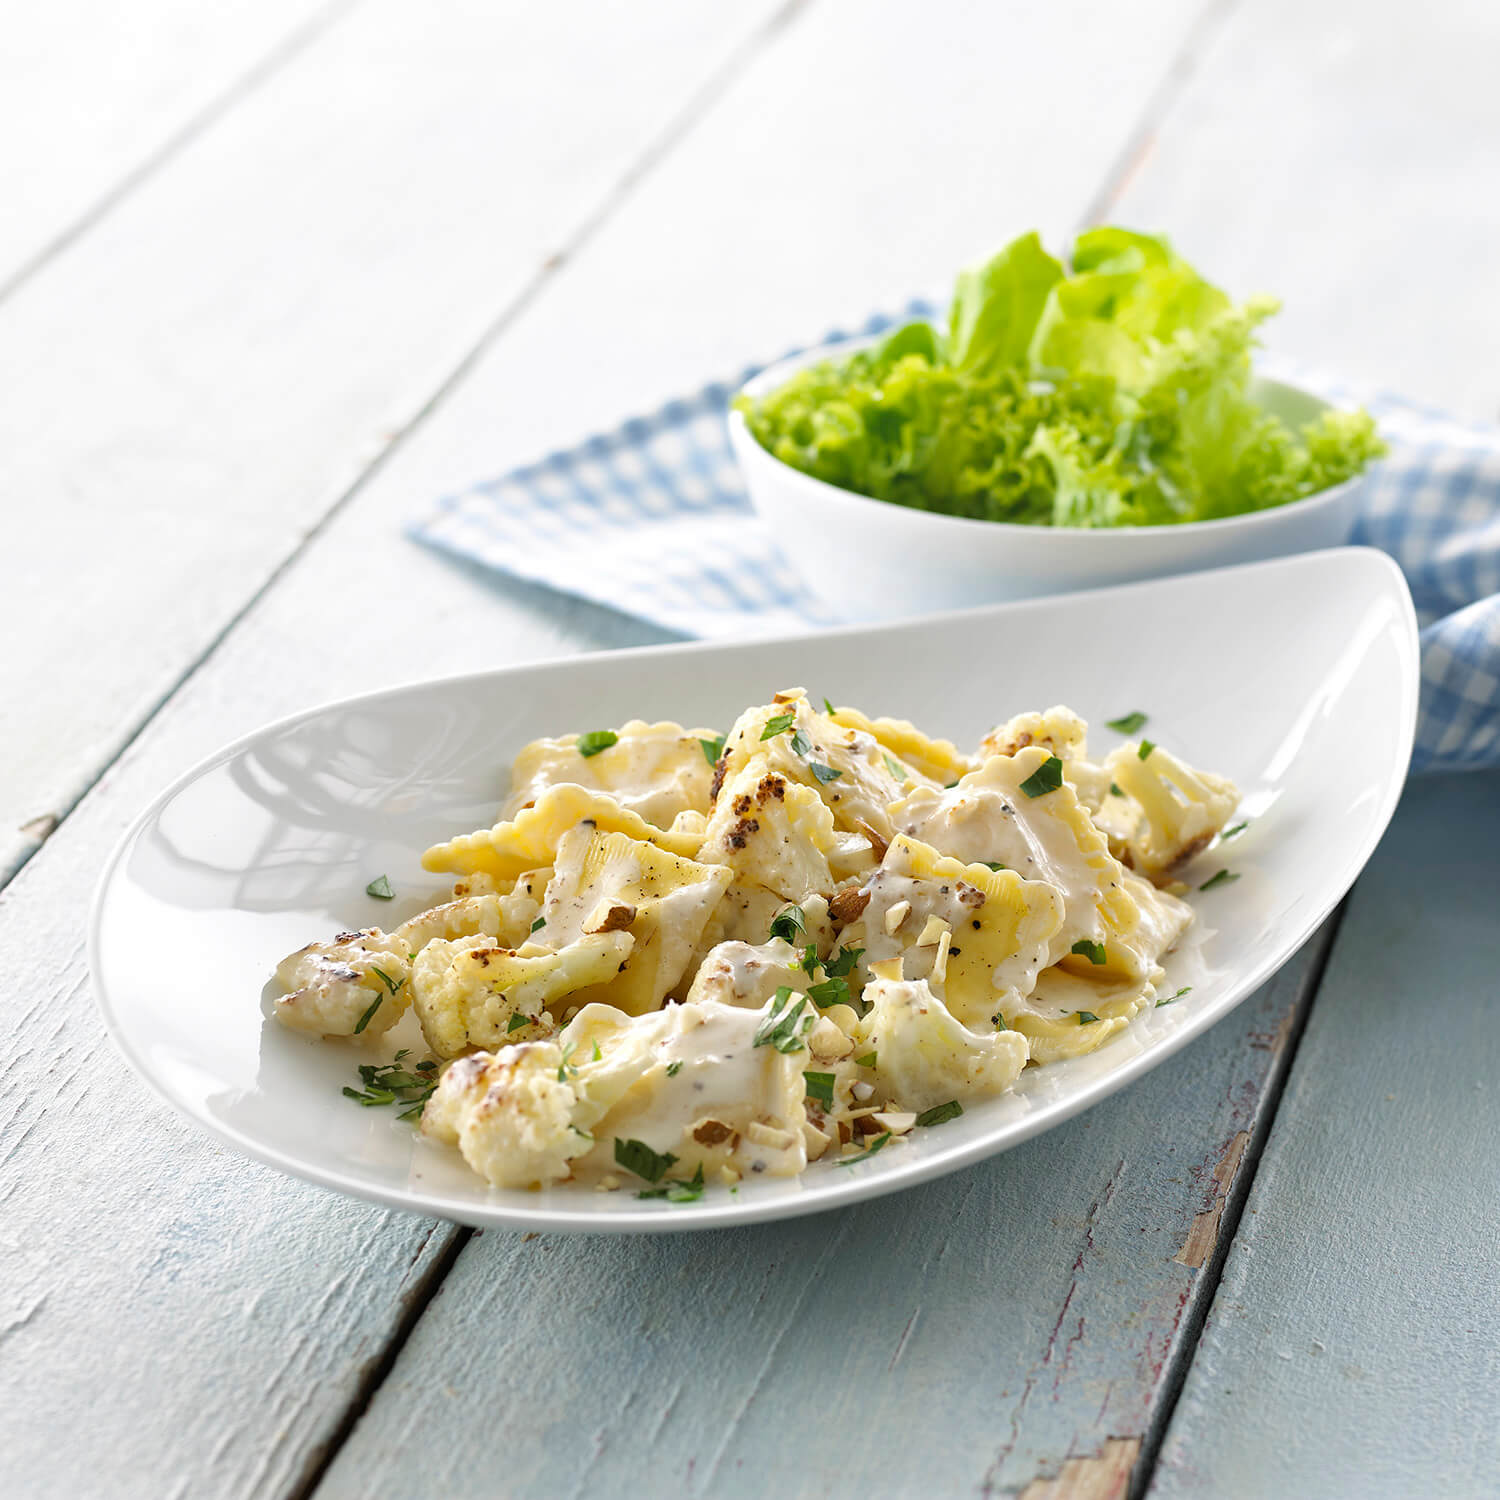 Pasta med mascarpone - ravioli ret med blomkål og ristede mandler - se opskrift